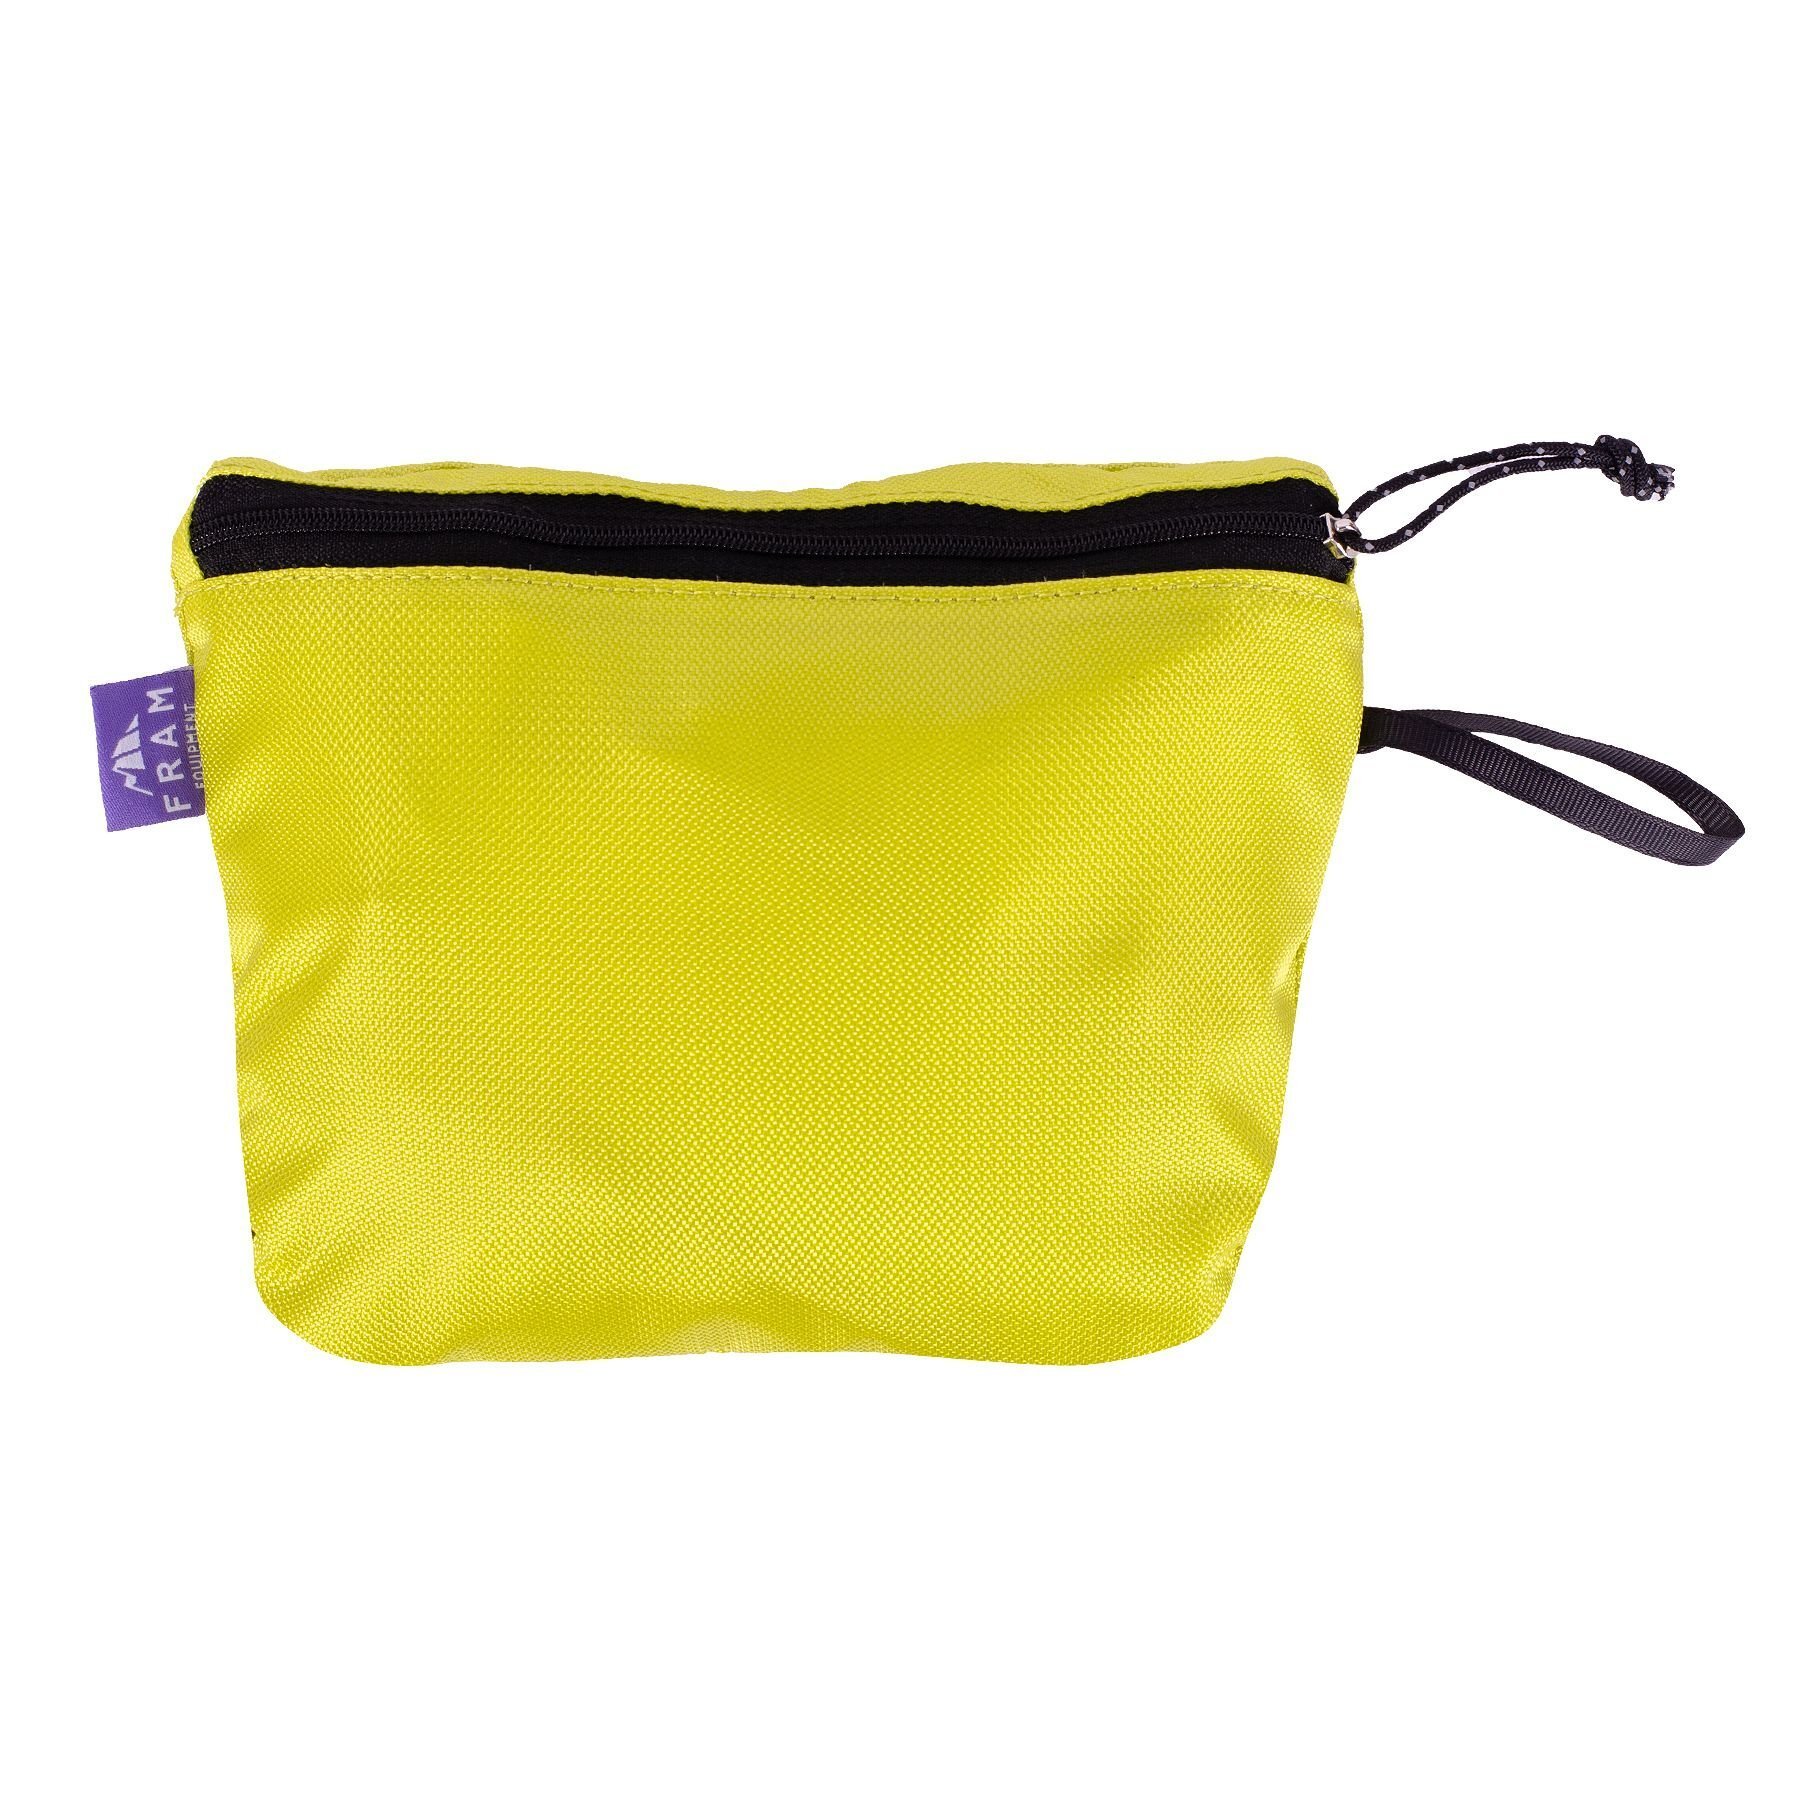 Компактный рюкзак Ararat 17L лимонный фото 3